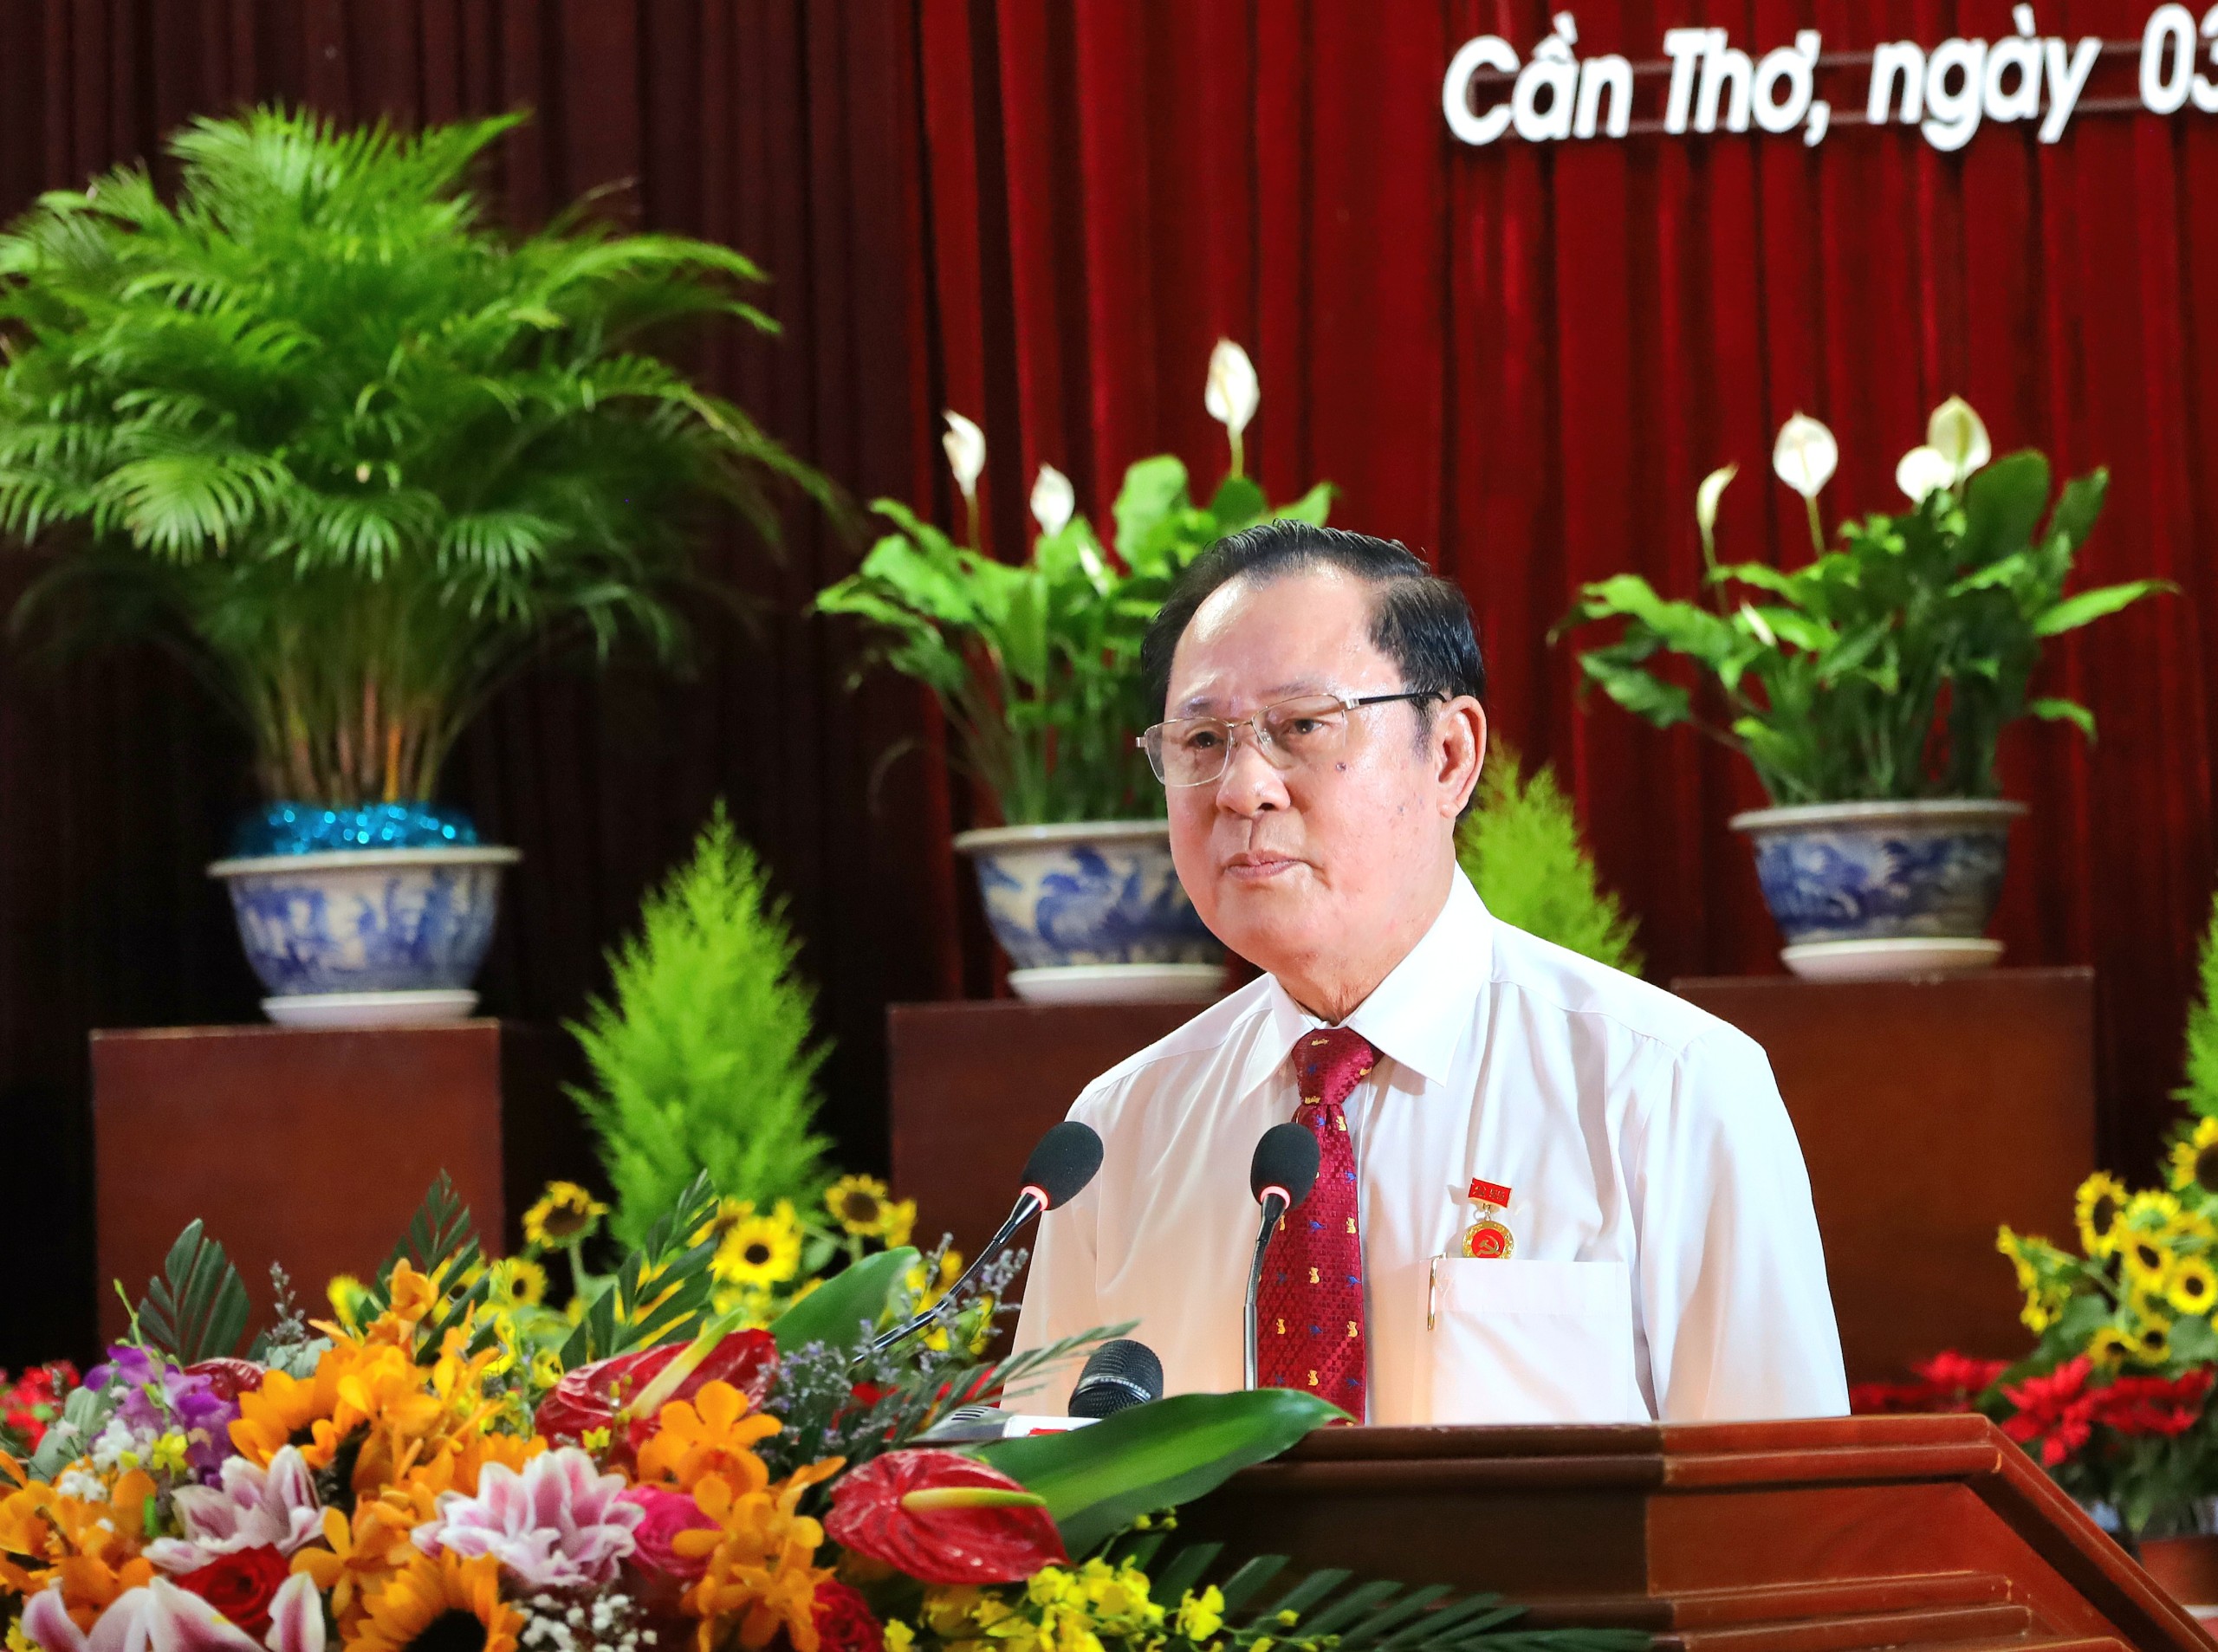 Ông Phạm Thanh Vận - Nguyên Phó Bí thư Thường trực Thành ủy Cần Thơ đại diện các Đảng viên được trao tặng Huy hiệu Đảng phát biểu cảm tưởng.